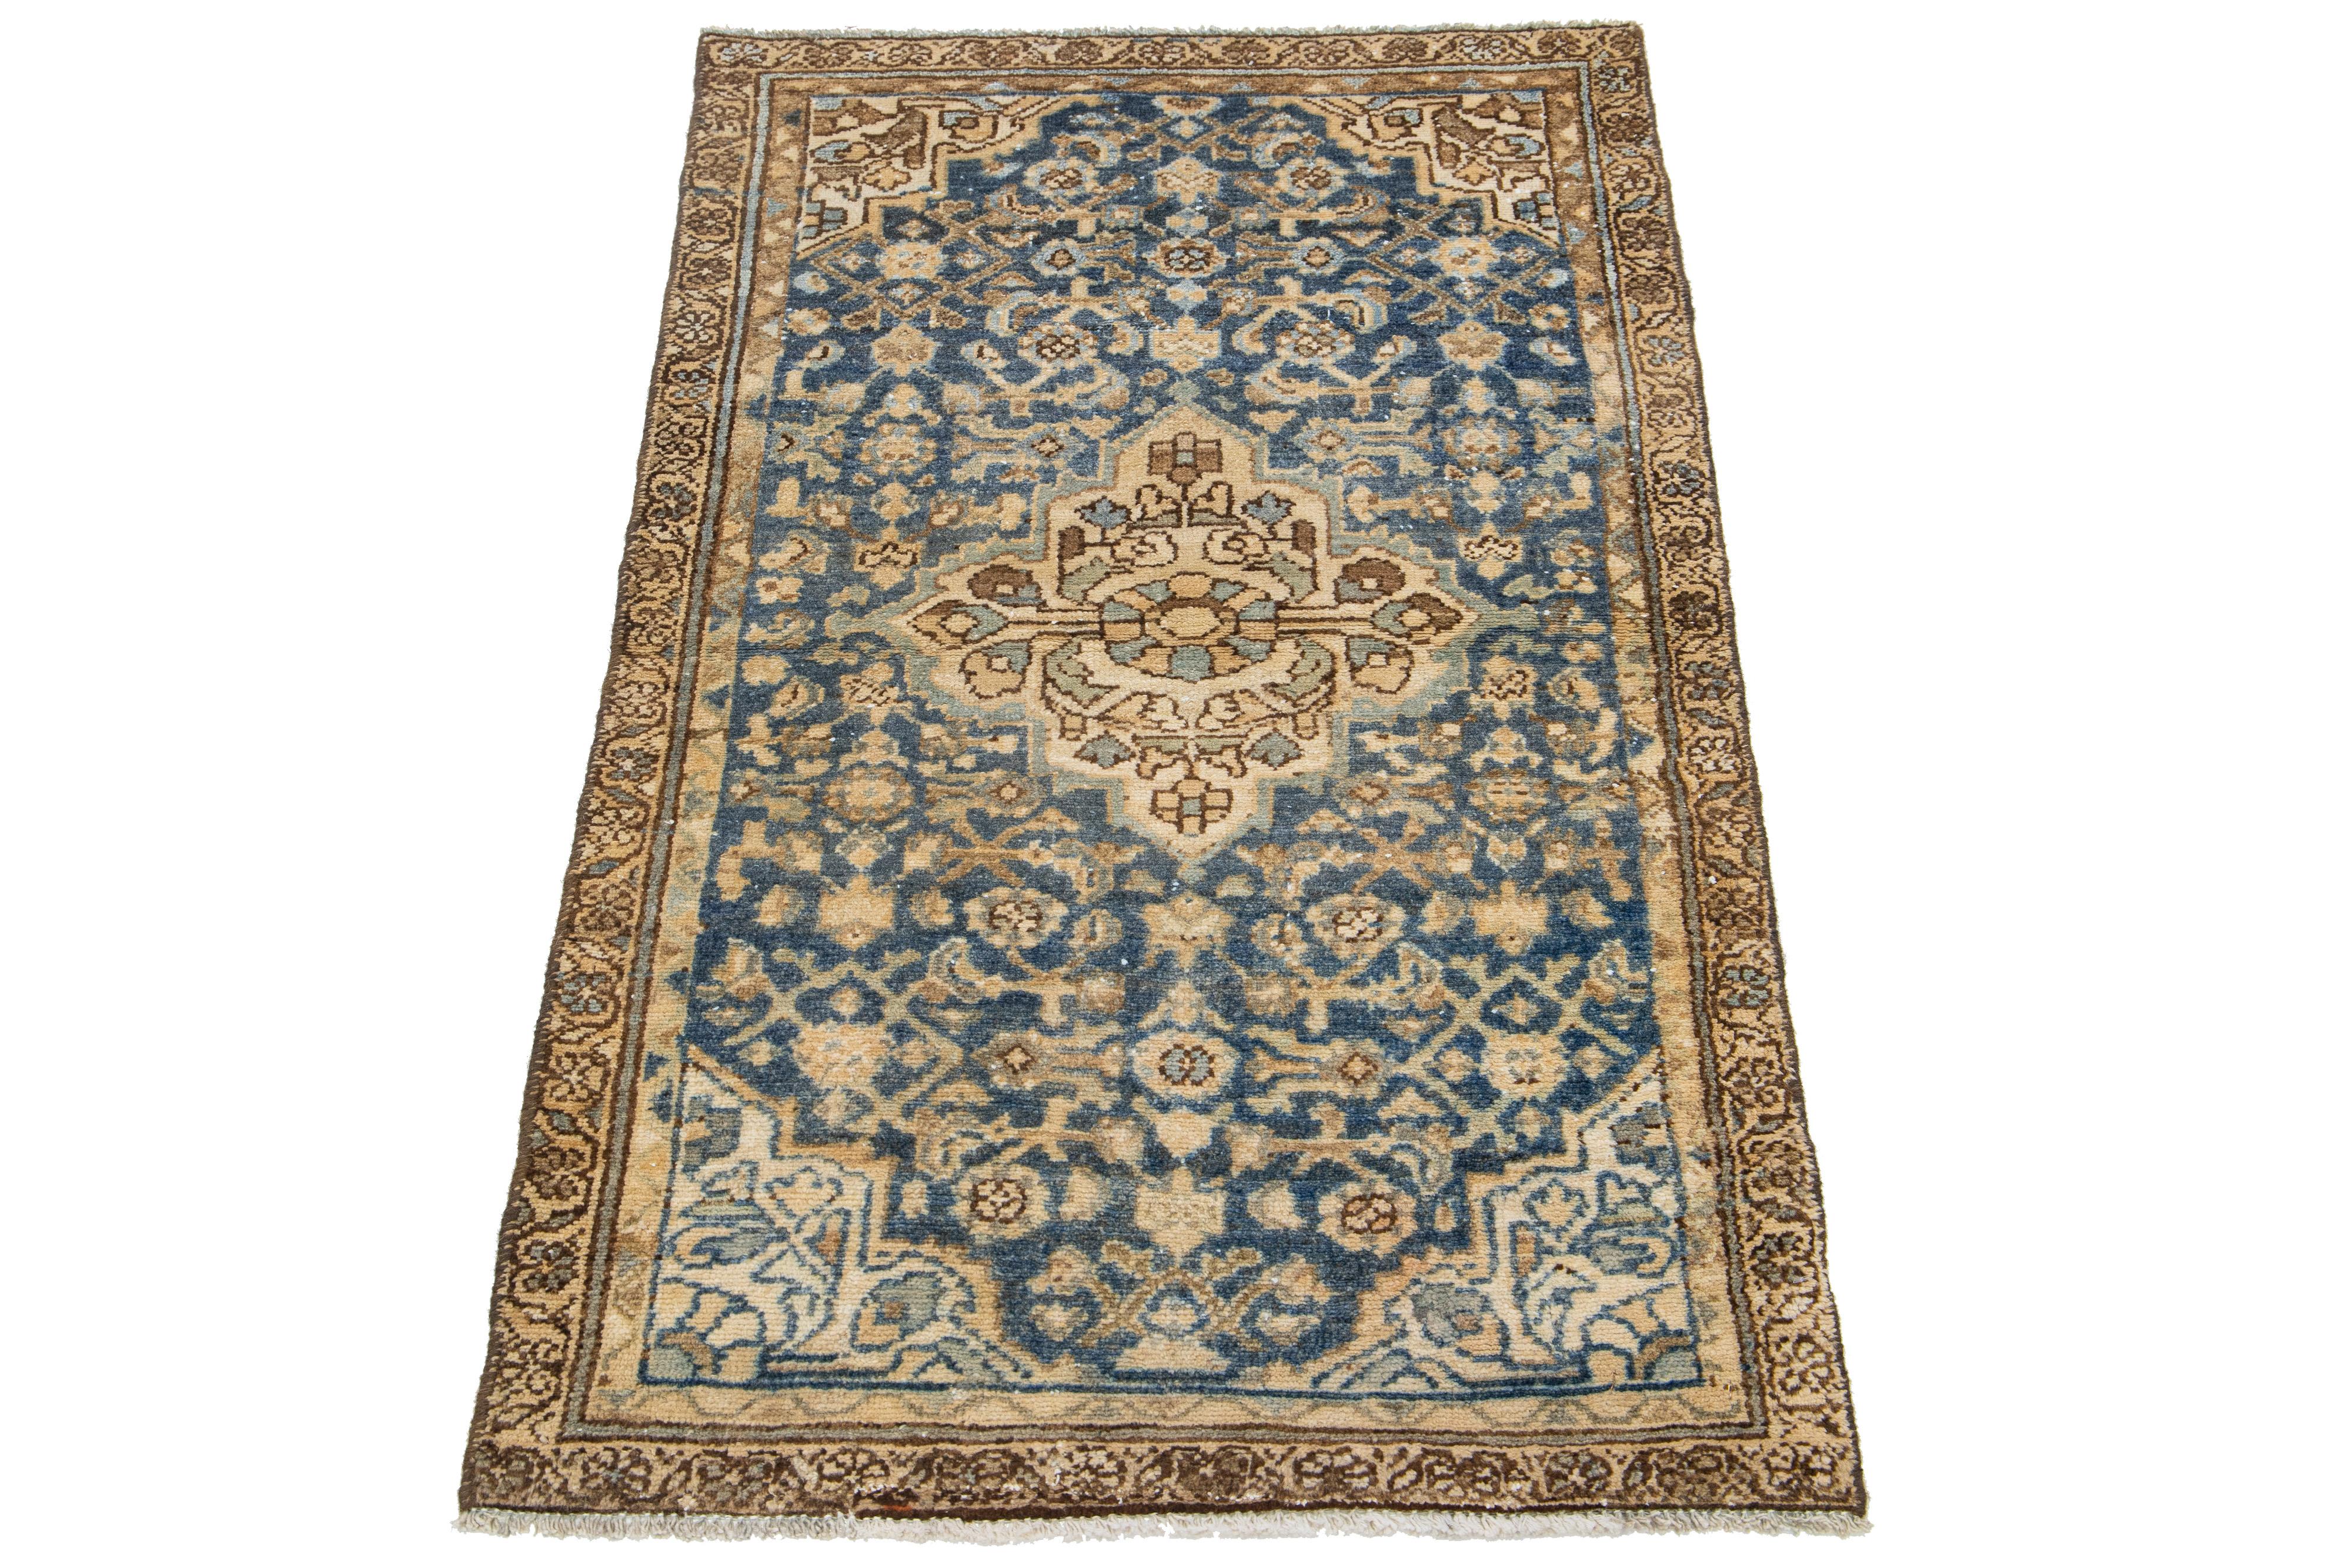 Dieser antike Hamadan-Teppich ist aus hochwertiger Wolle handgeknüpft und besticht durch ein blaues Feld, das durch ein fesselndes Allover-Muster mit beigen Akzenten ergänzt wird.

Dieser Teppich misst 2'4